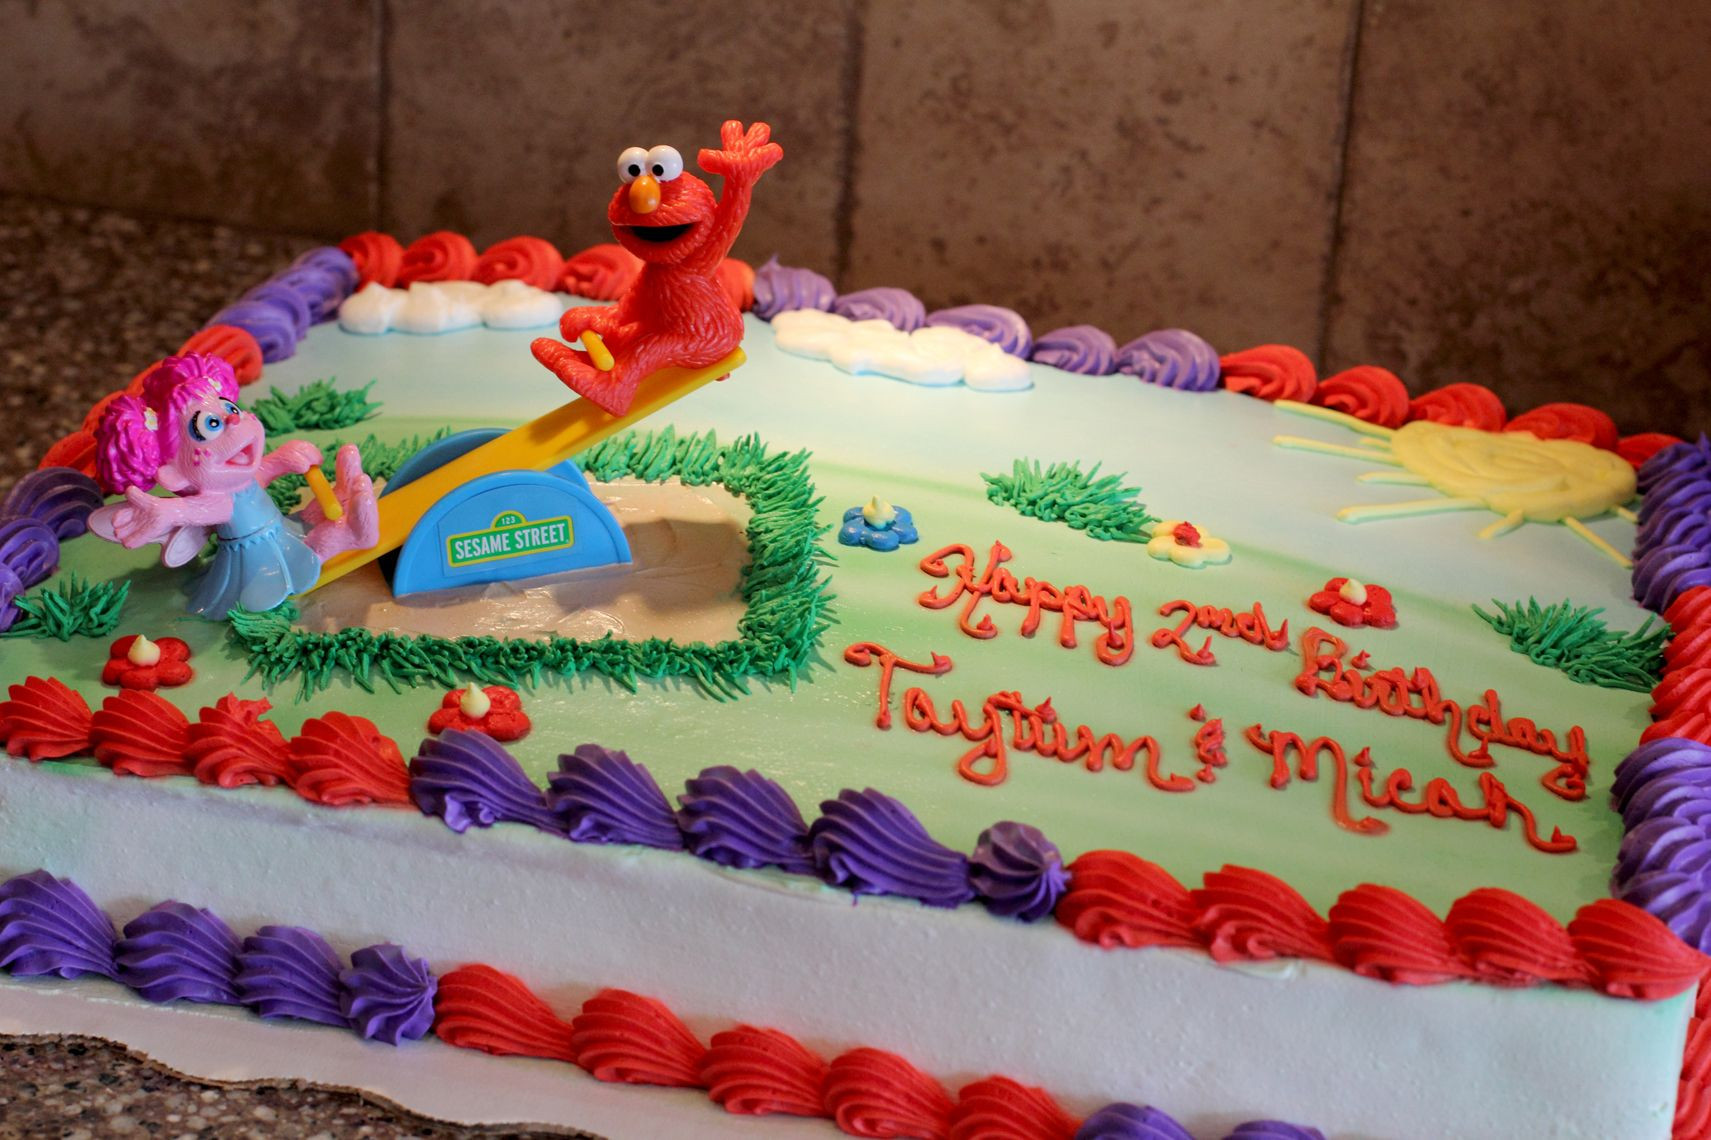 Elmo Birthday Cakes At Walmart
 Walmart Elmo Cake Cake Ideas and Designs